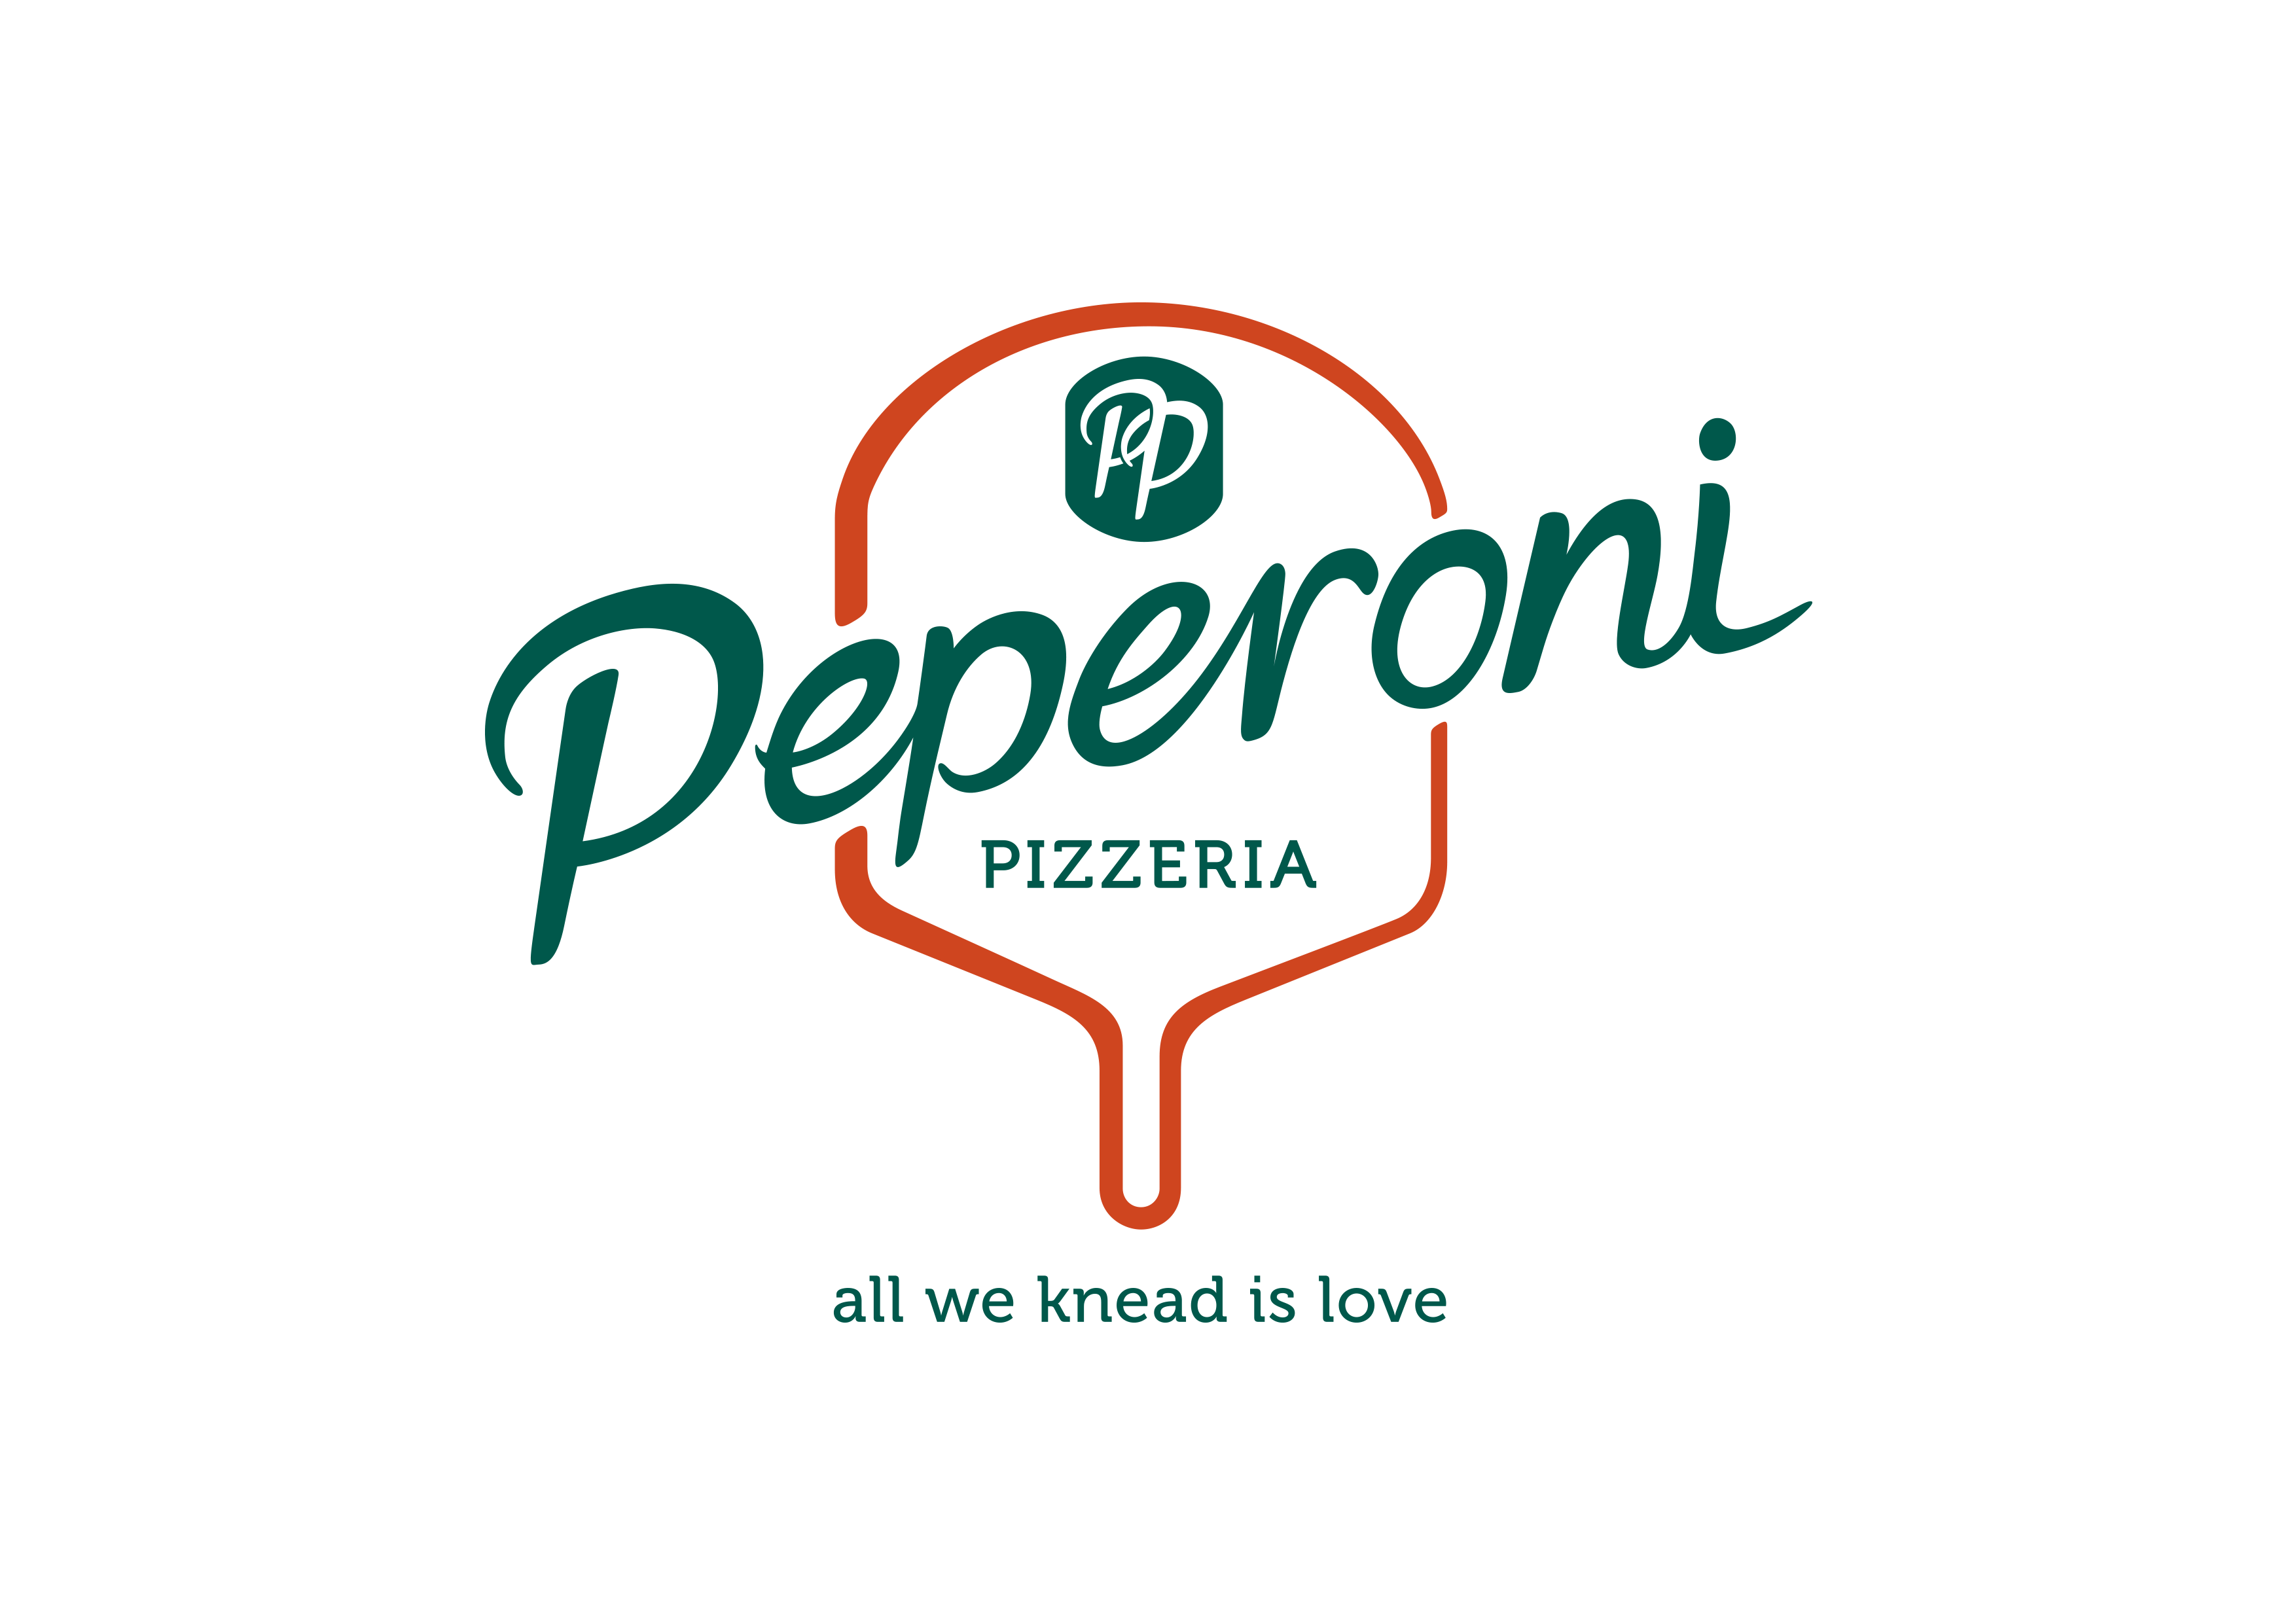 Sg peperoni logo rgb